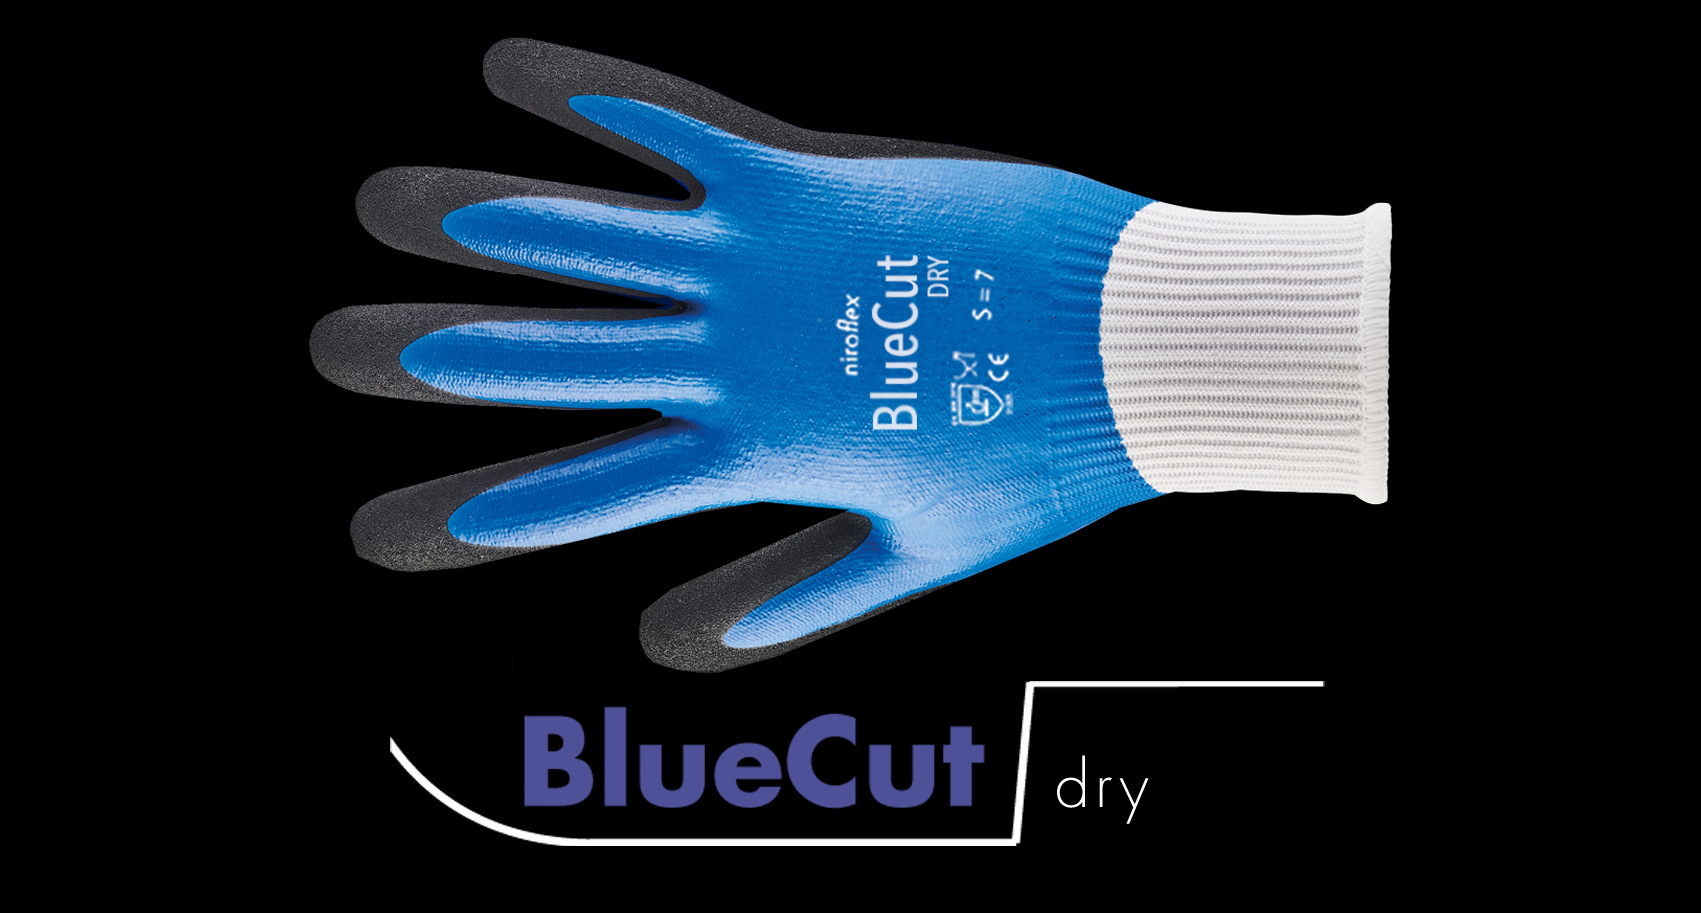 BlueCut dry / BlueCut pro / armguard / lite / lite x